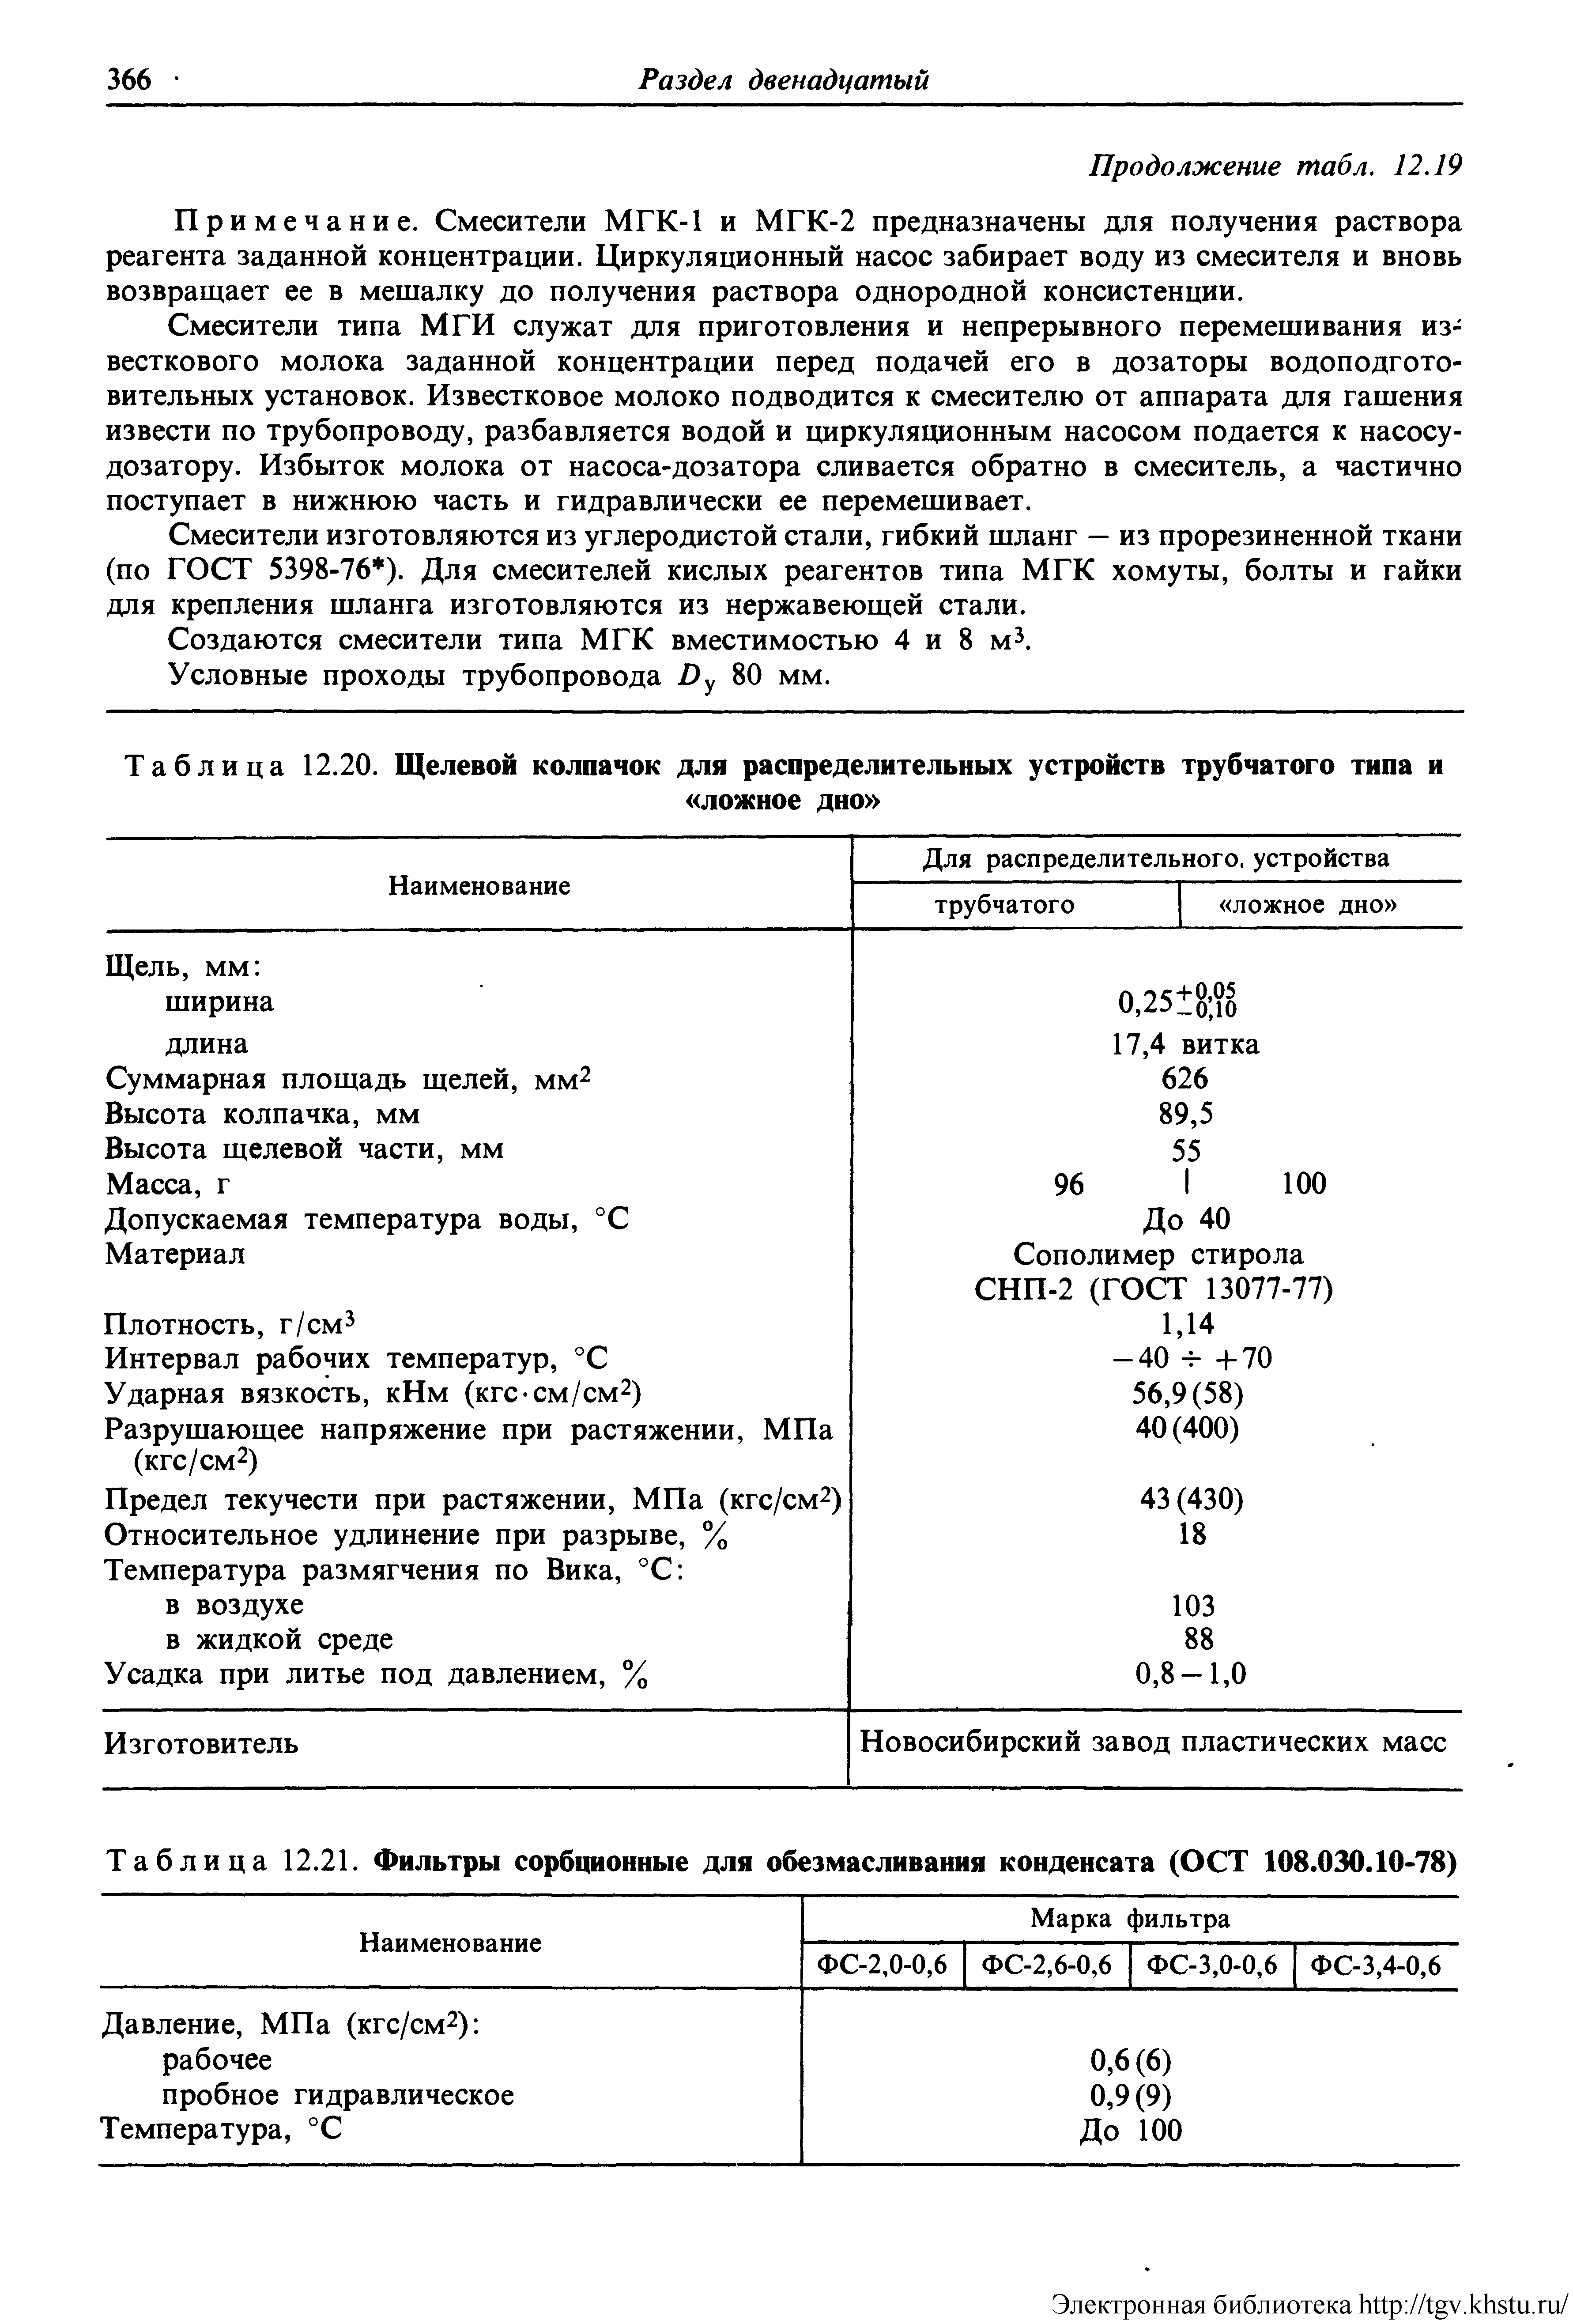 Таблица 12.21. Фильтры сорбционные для обезмасливания конденсата (ОСТ 108.030.10-78)
